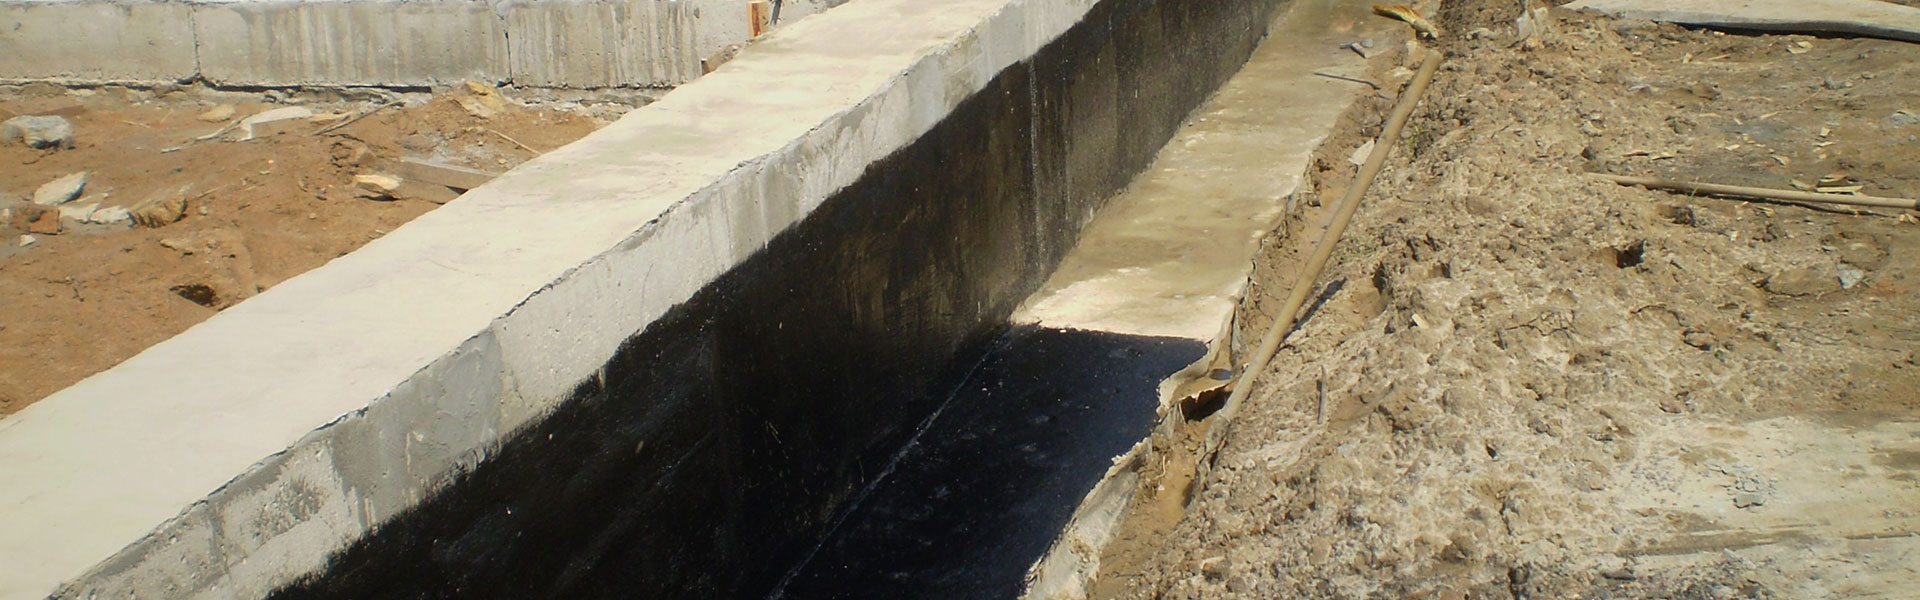 Обмазочная гидроизоляция бетона, низкие цены